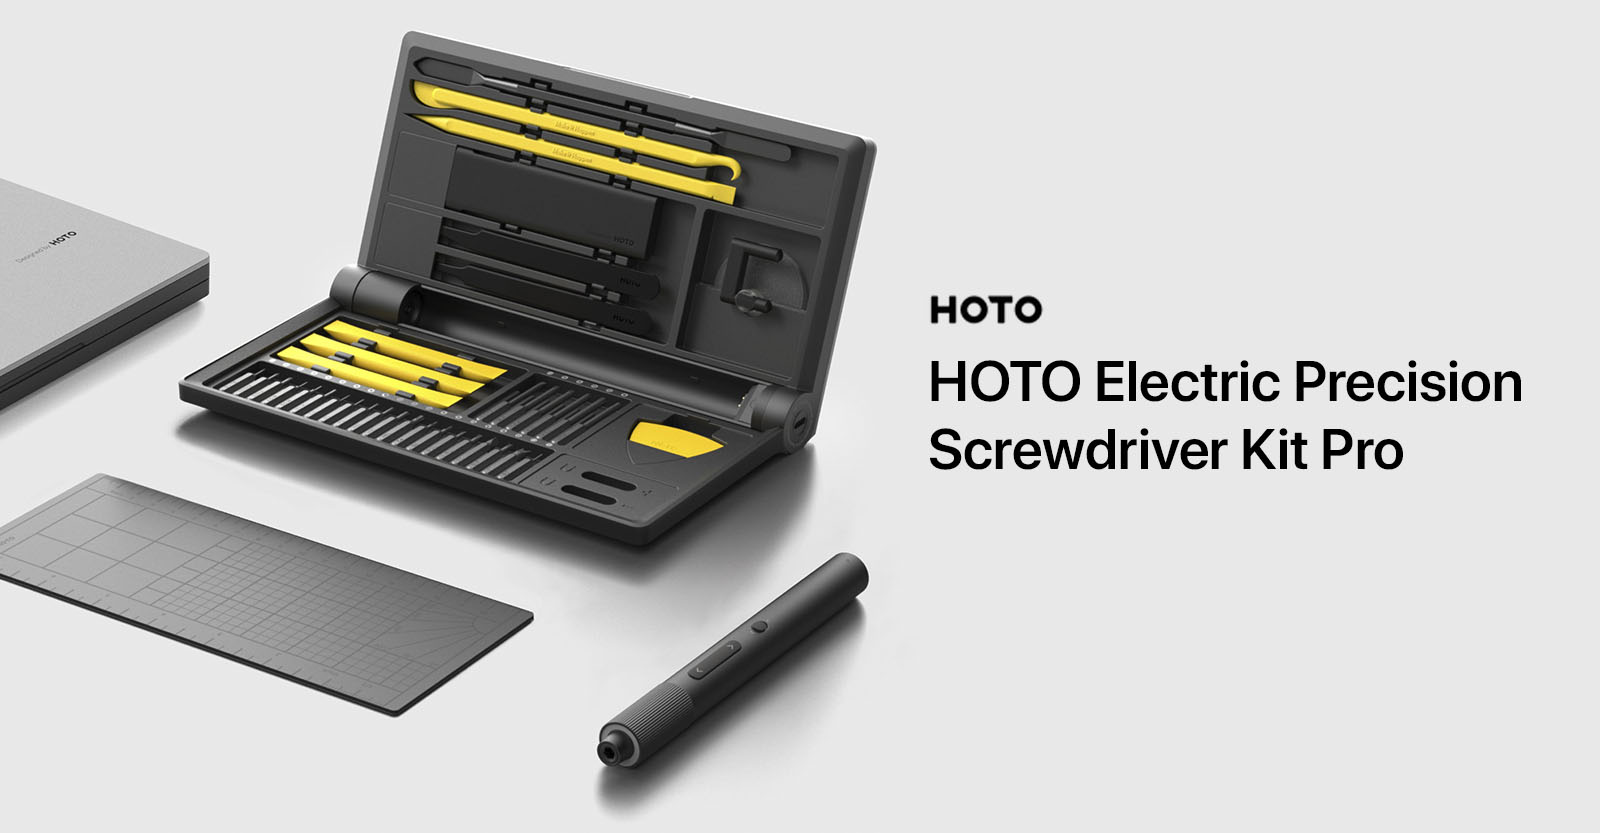 Hoto Precision Screwdriver Kit Pro